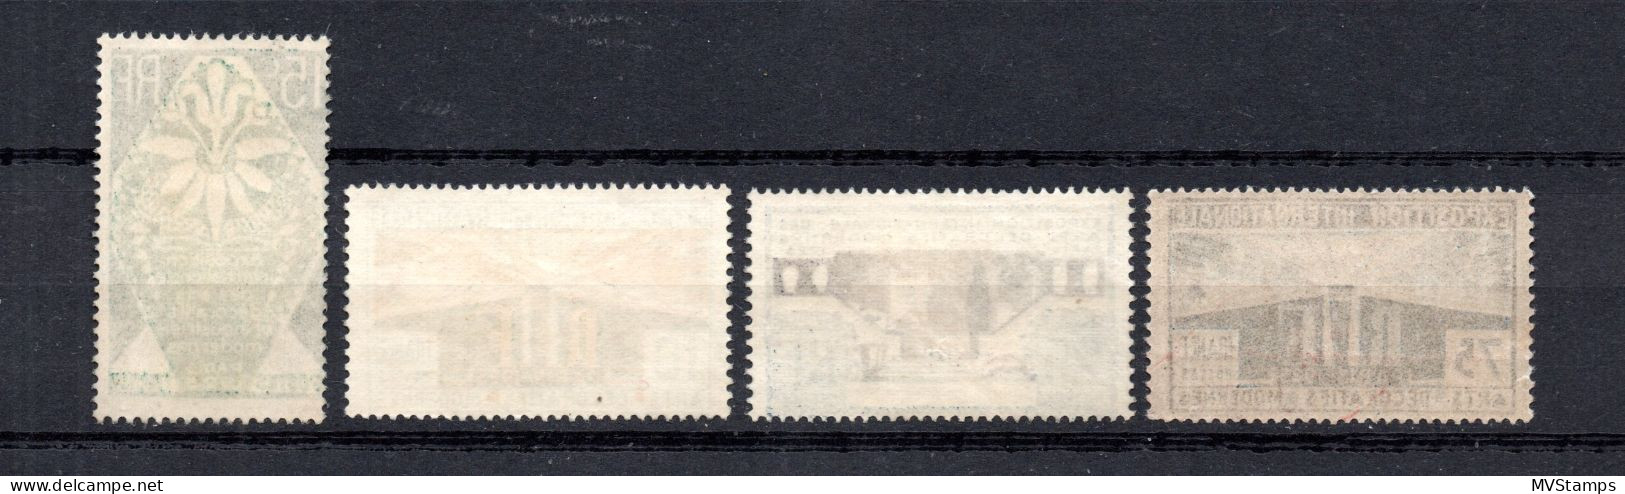 Frankreich 1925 Satz 177/80 Kunsewerbeausstellung Paris Postfrisch - Unused Stamps